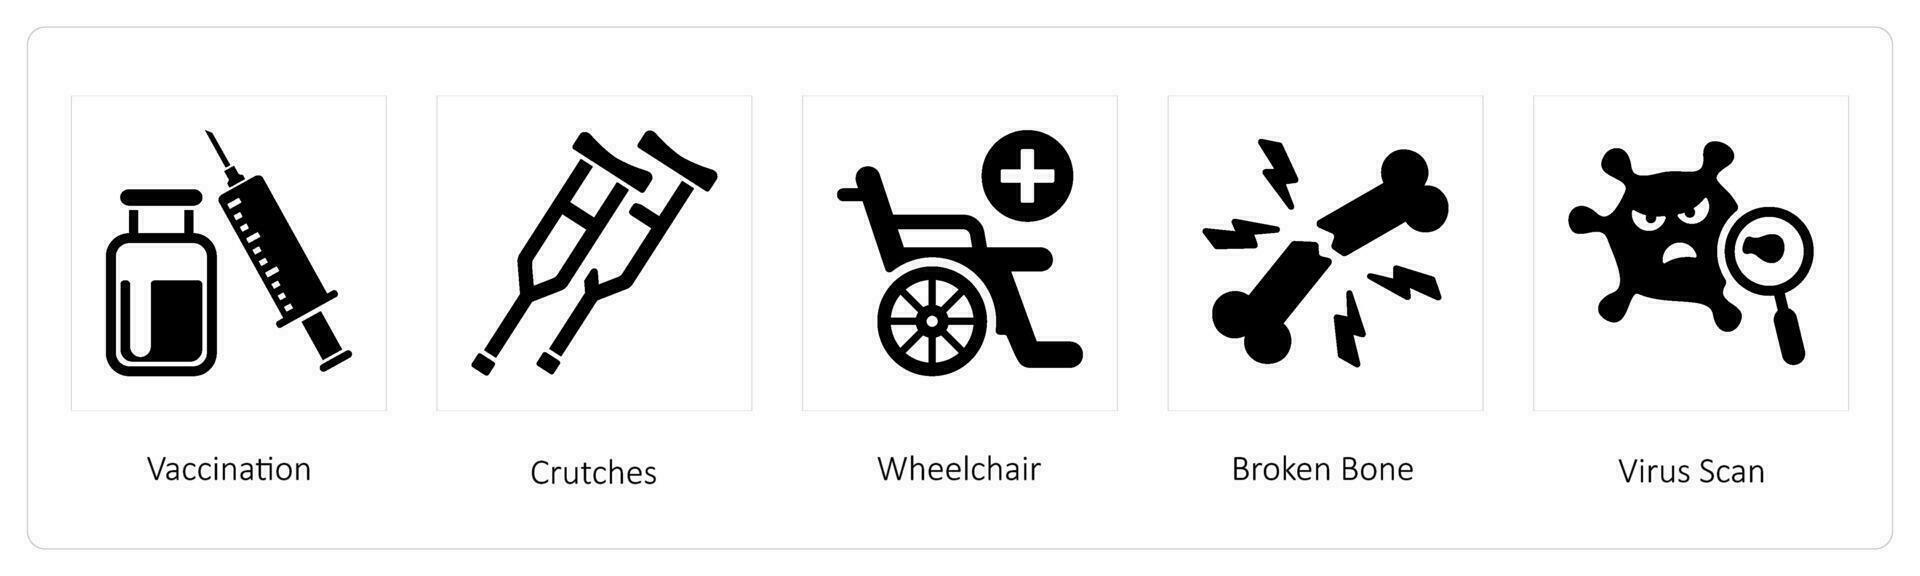 Vaccination, Crutches, Wheelchair vector